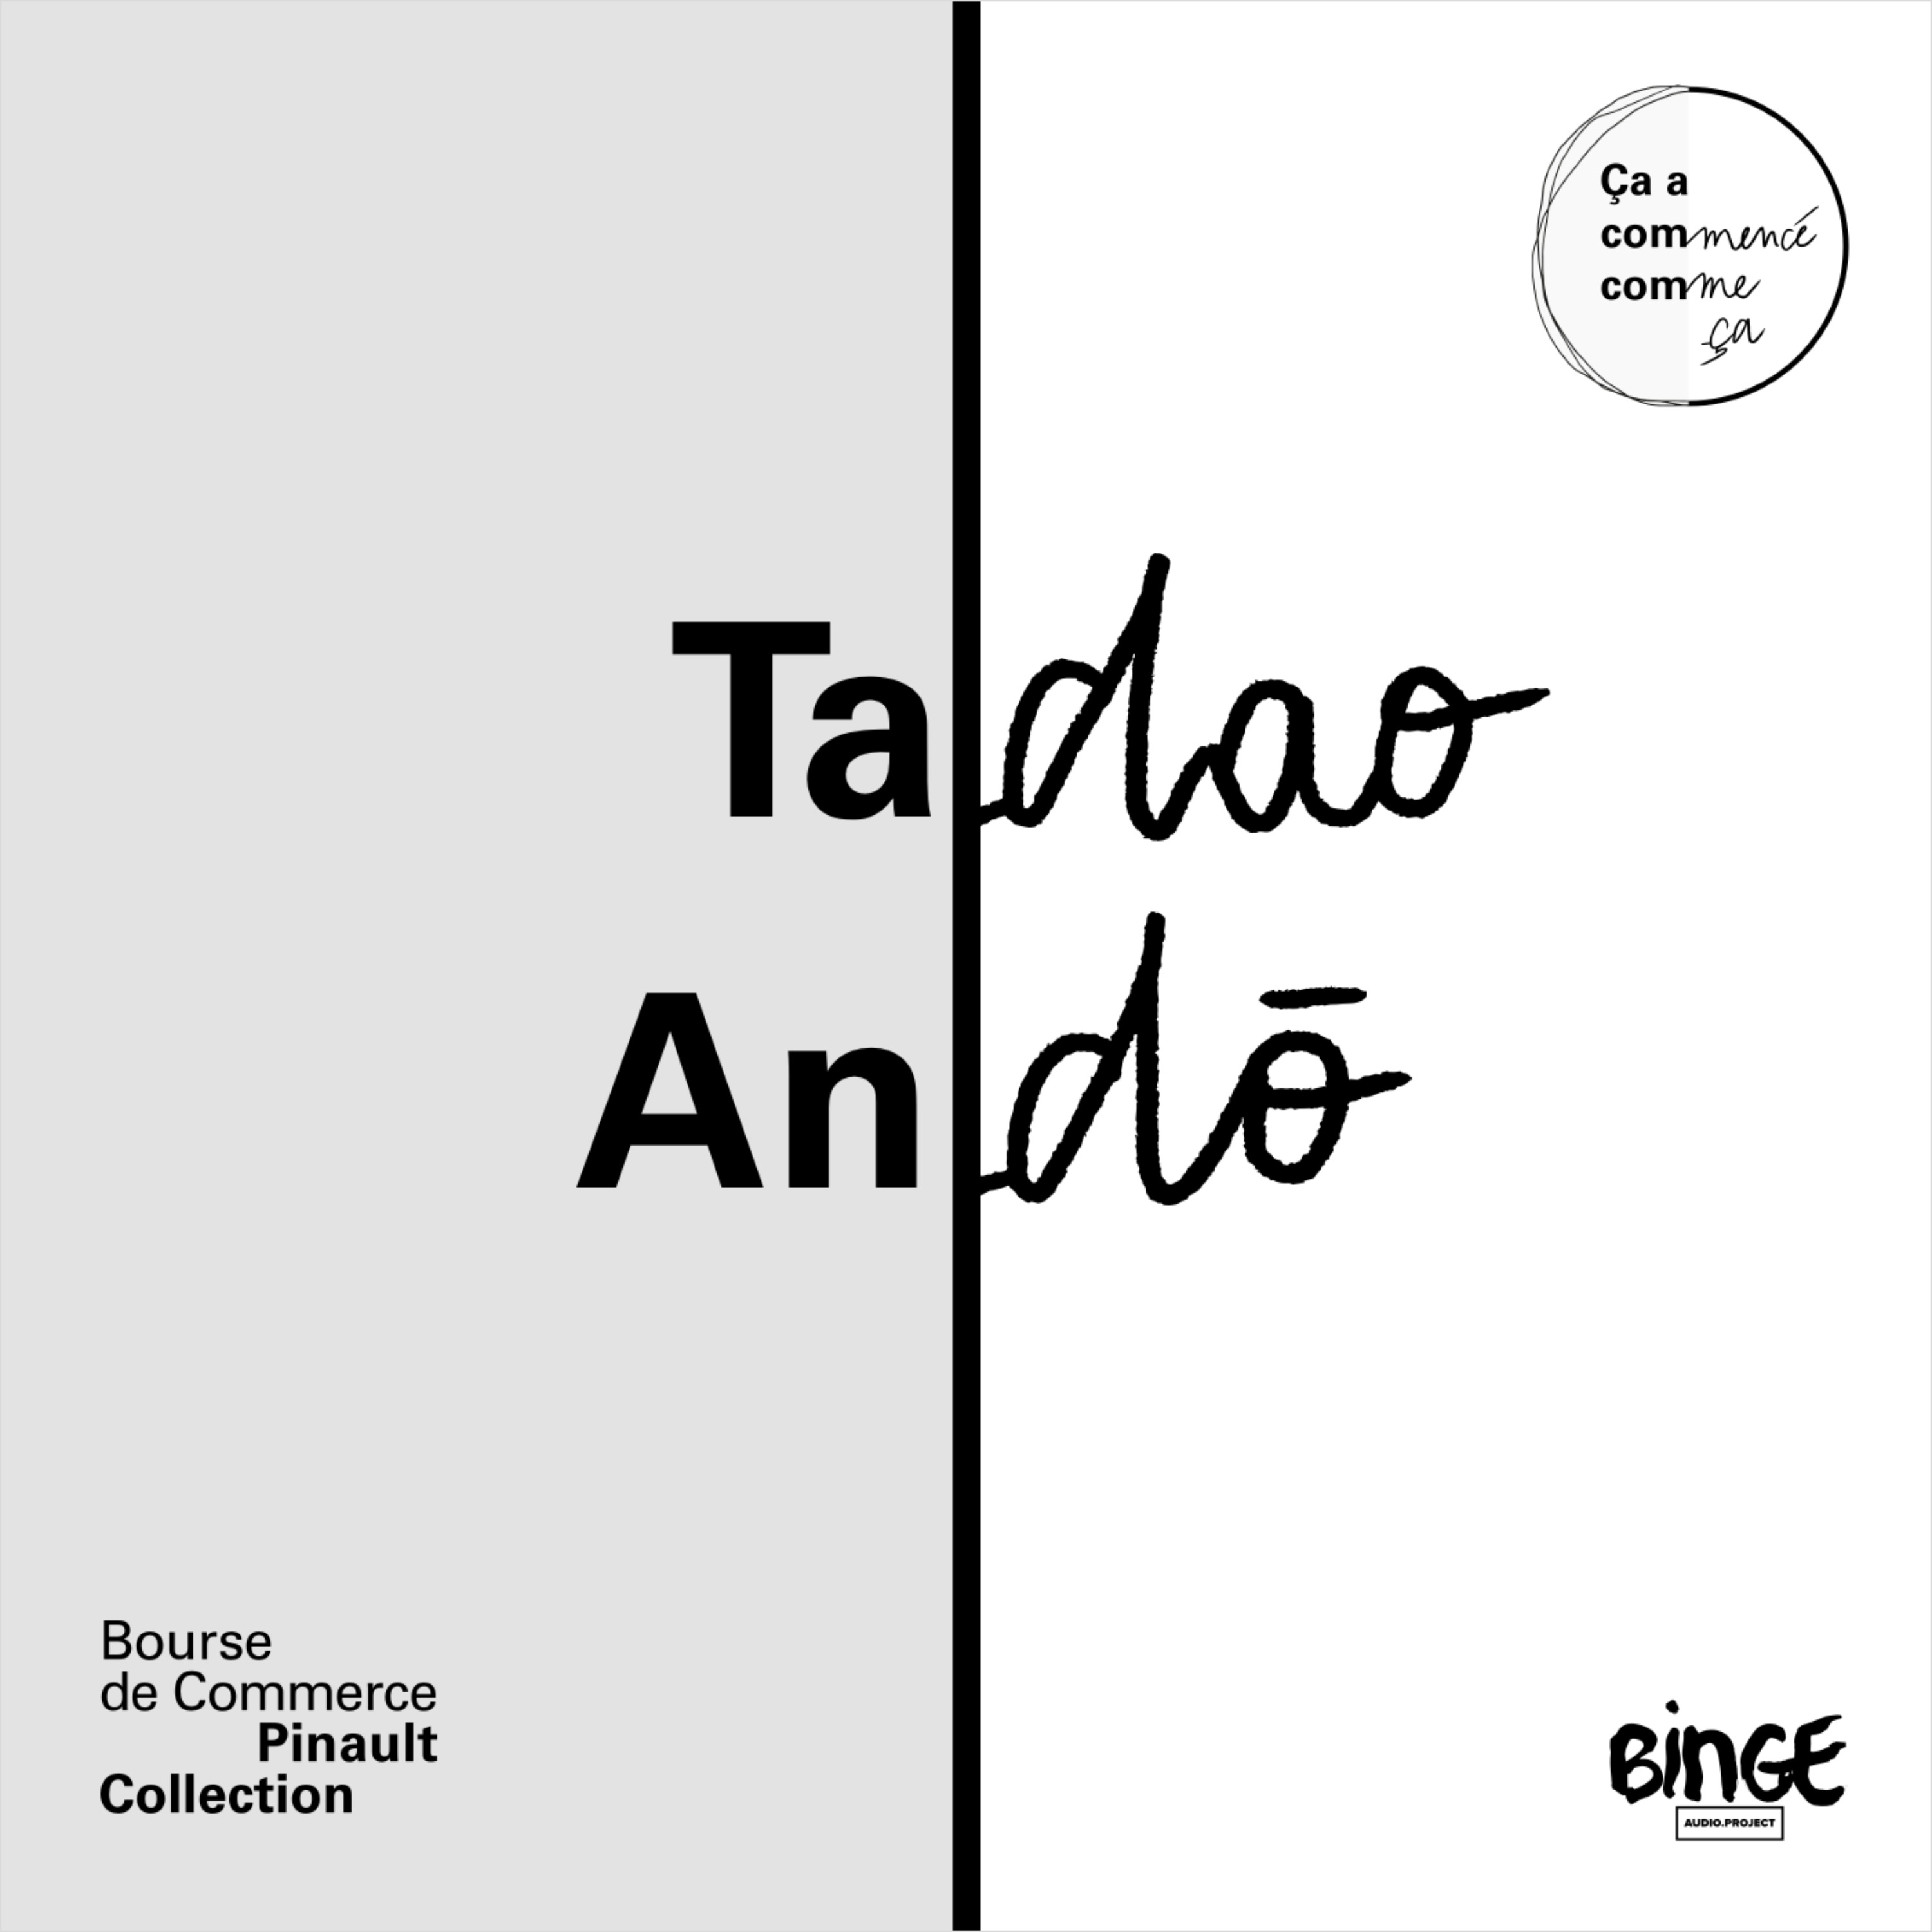 Tadao Andō - De béton et de lumière